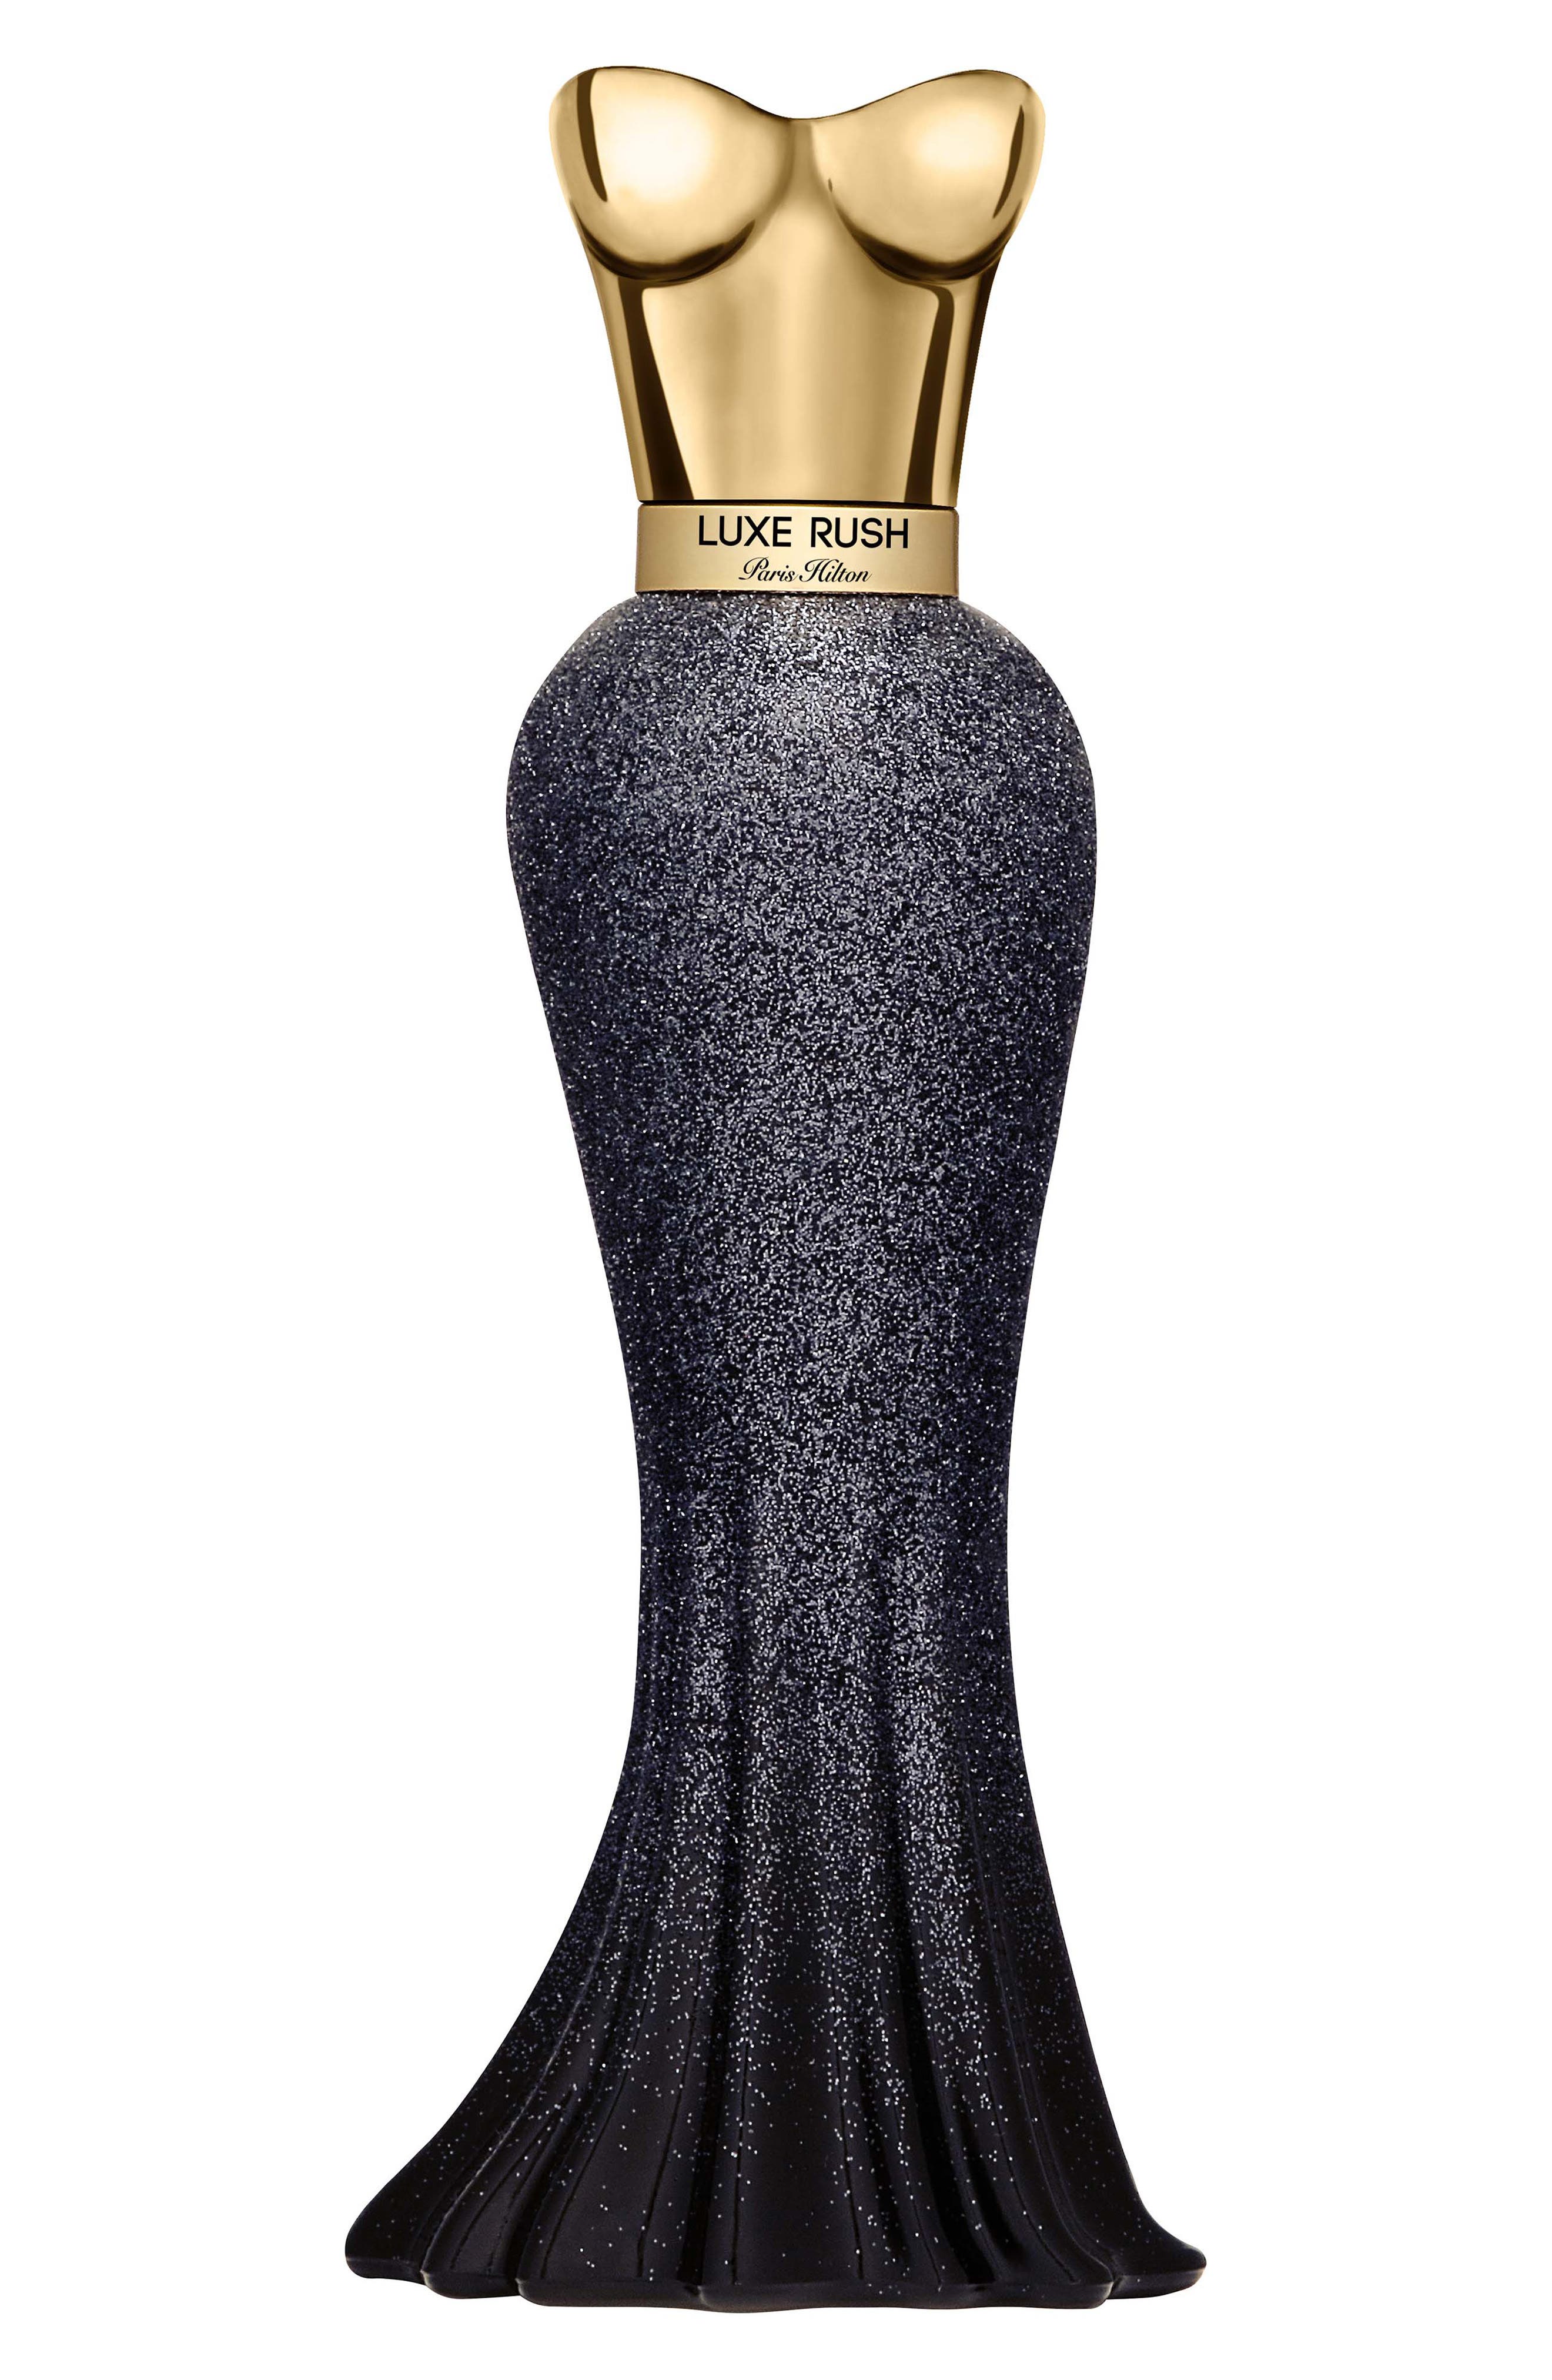 Luxe Rush Eau de Parfum Spray Paris Hilton